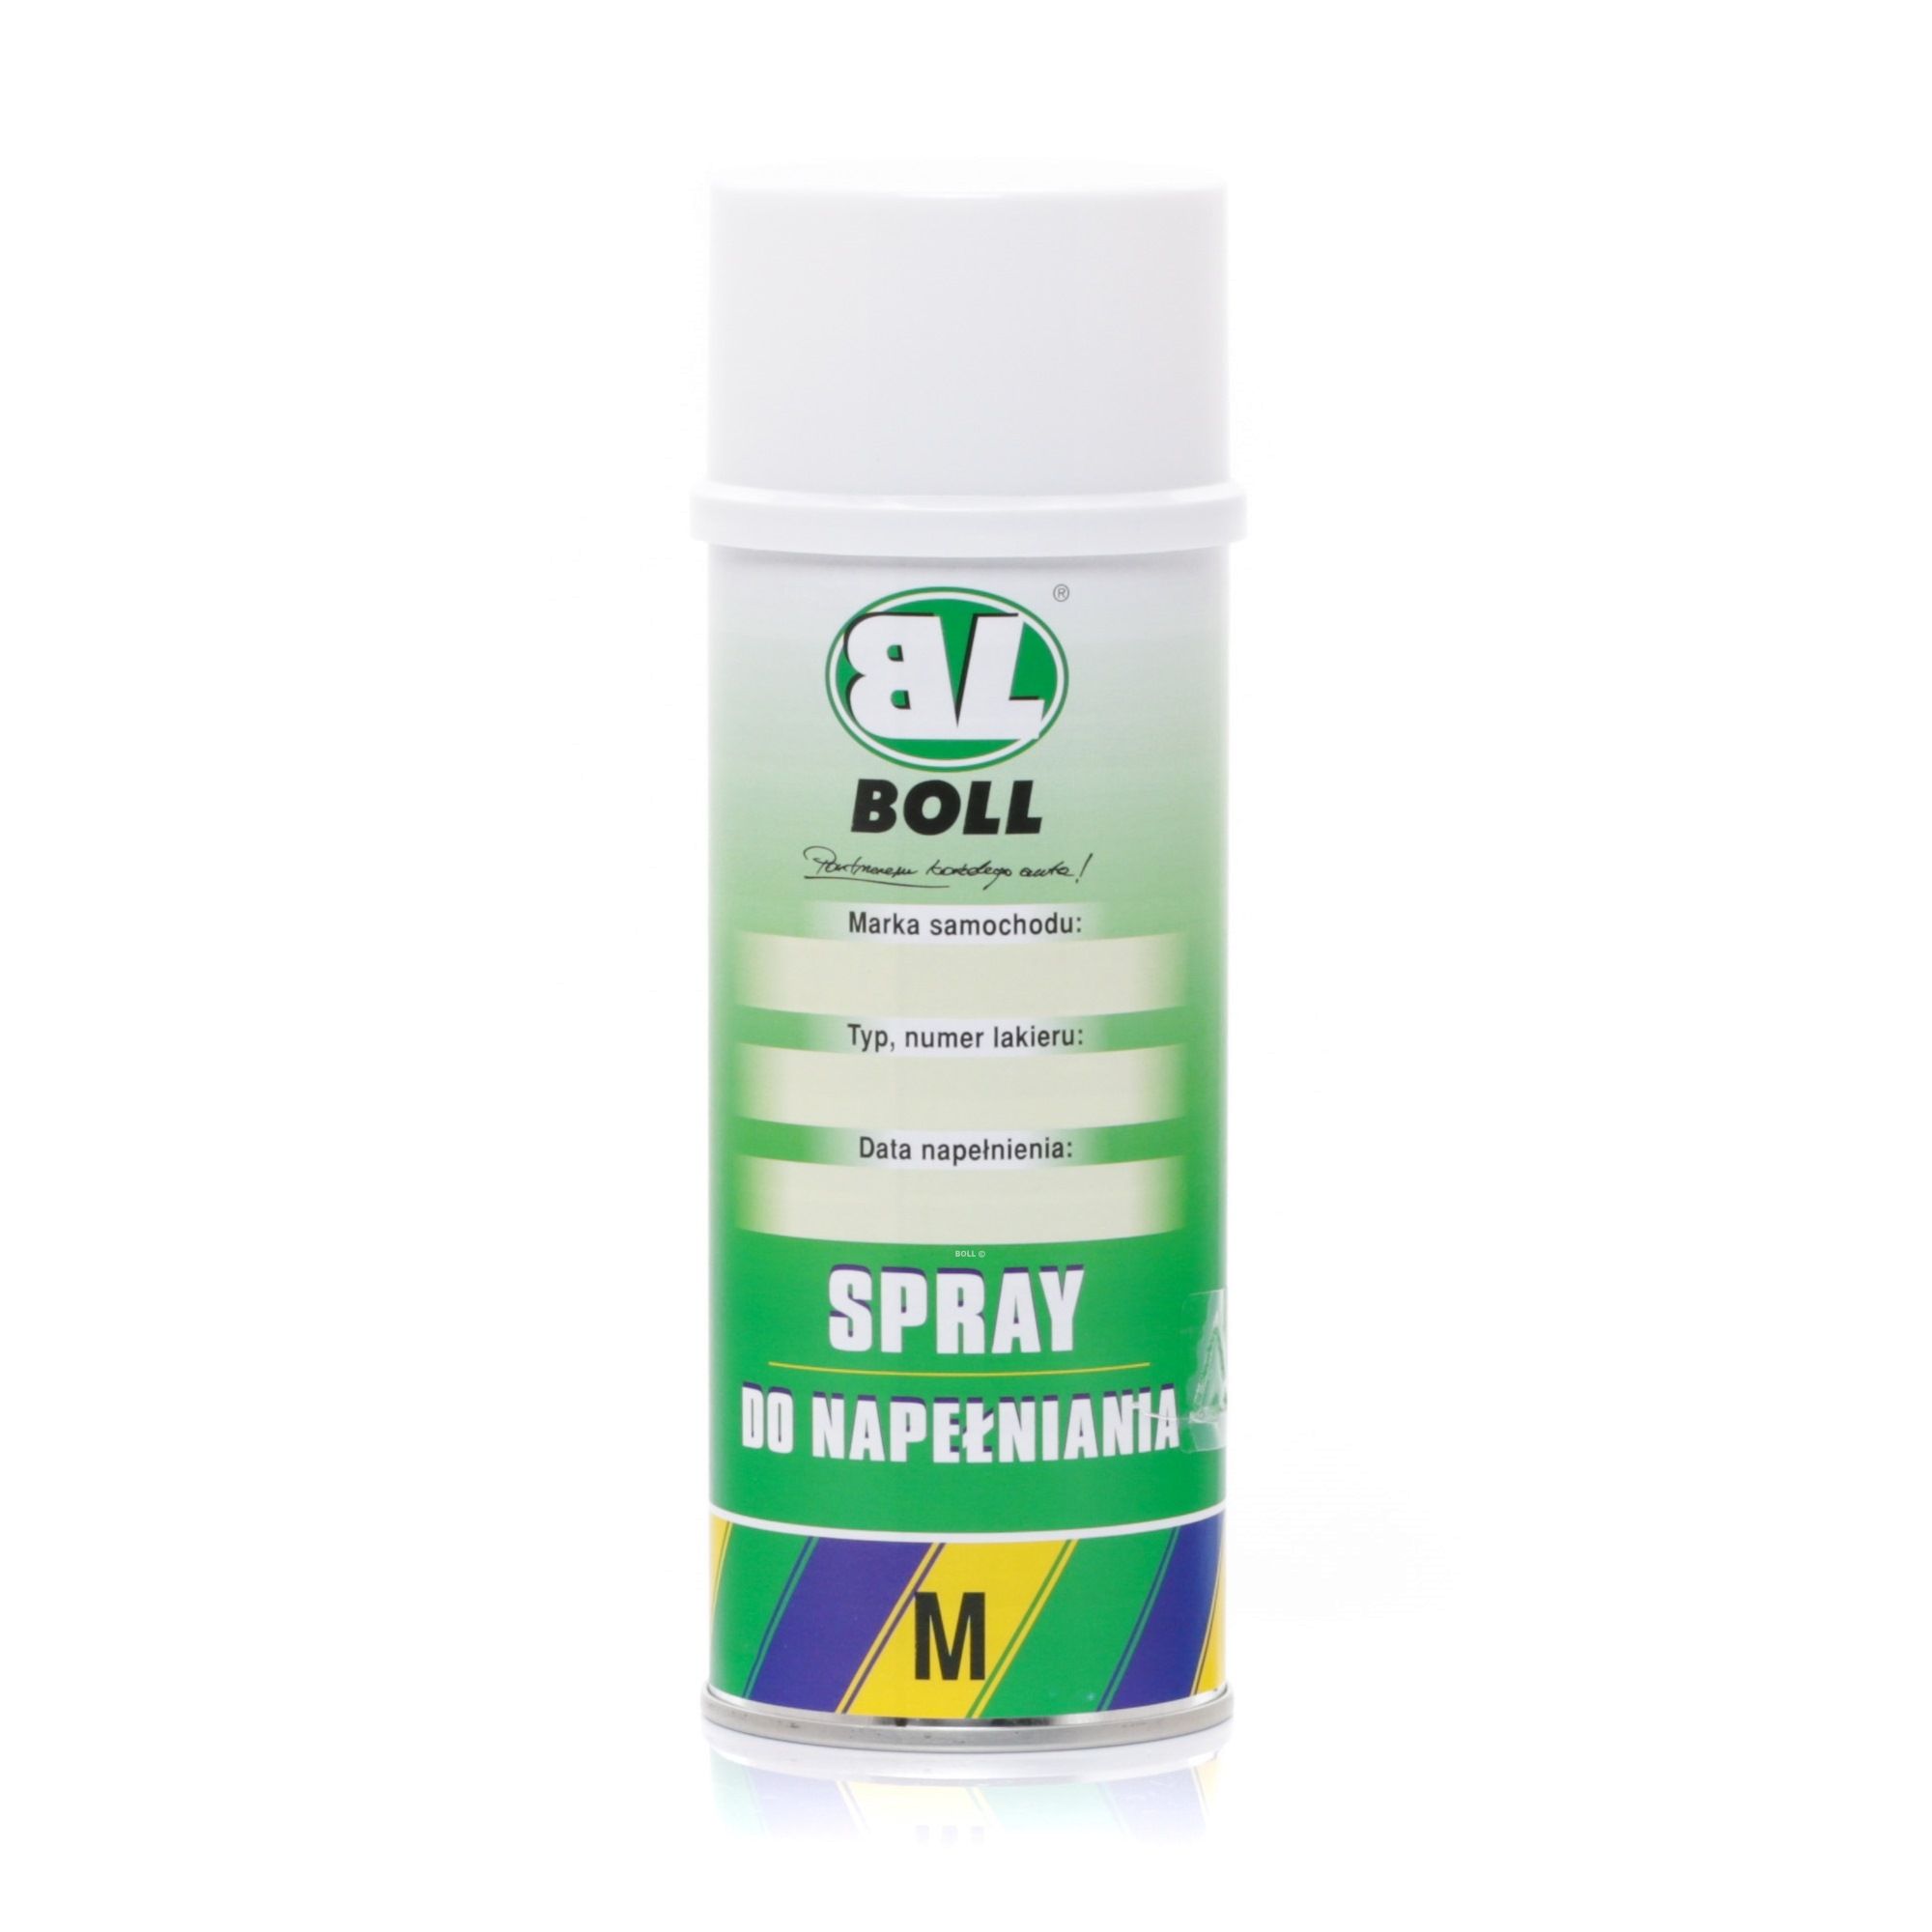 BOLL 001027 Spray putty aerosol aerosol, Capacity: 400ml